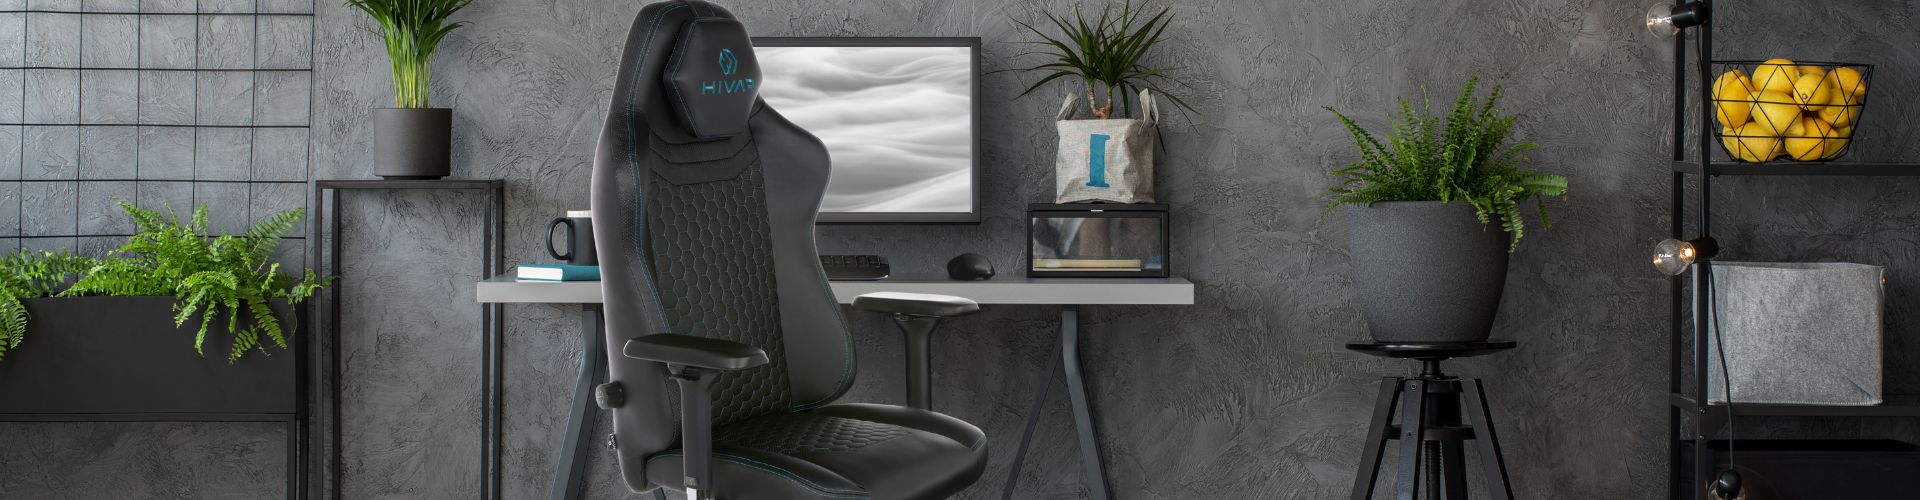 Skylar Ocean Gaming Stuhl in dunkelblau vor einem Schreibtisch. Im Hintergrund ist ein Ergometer